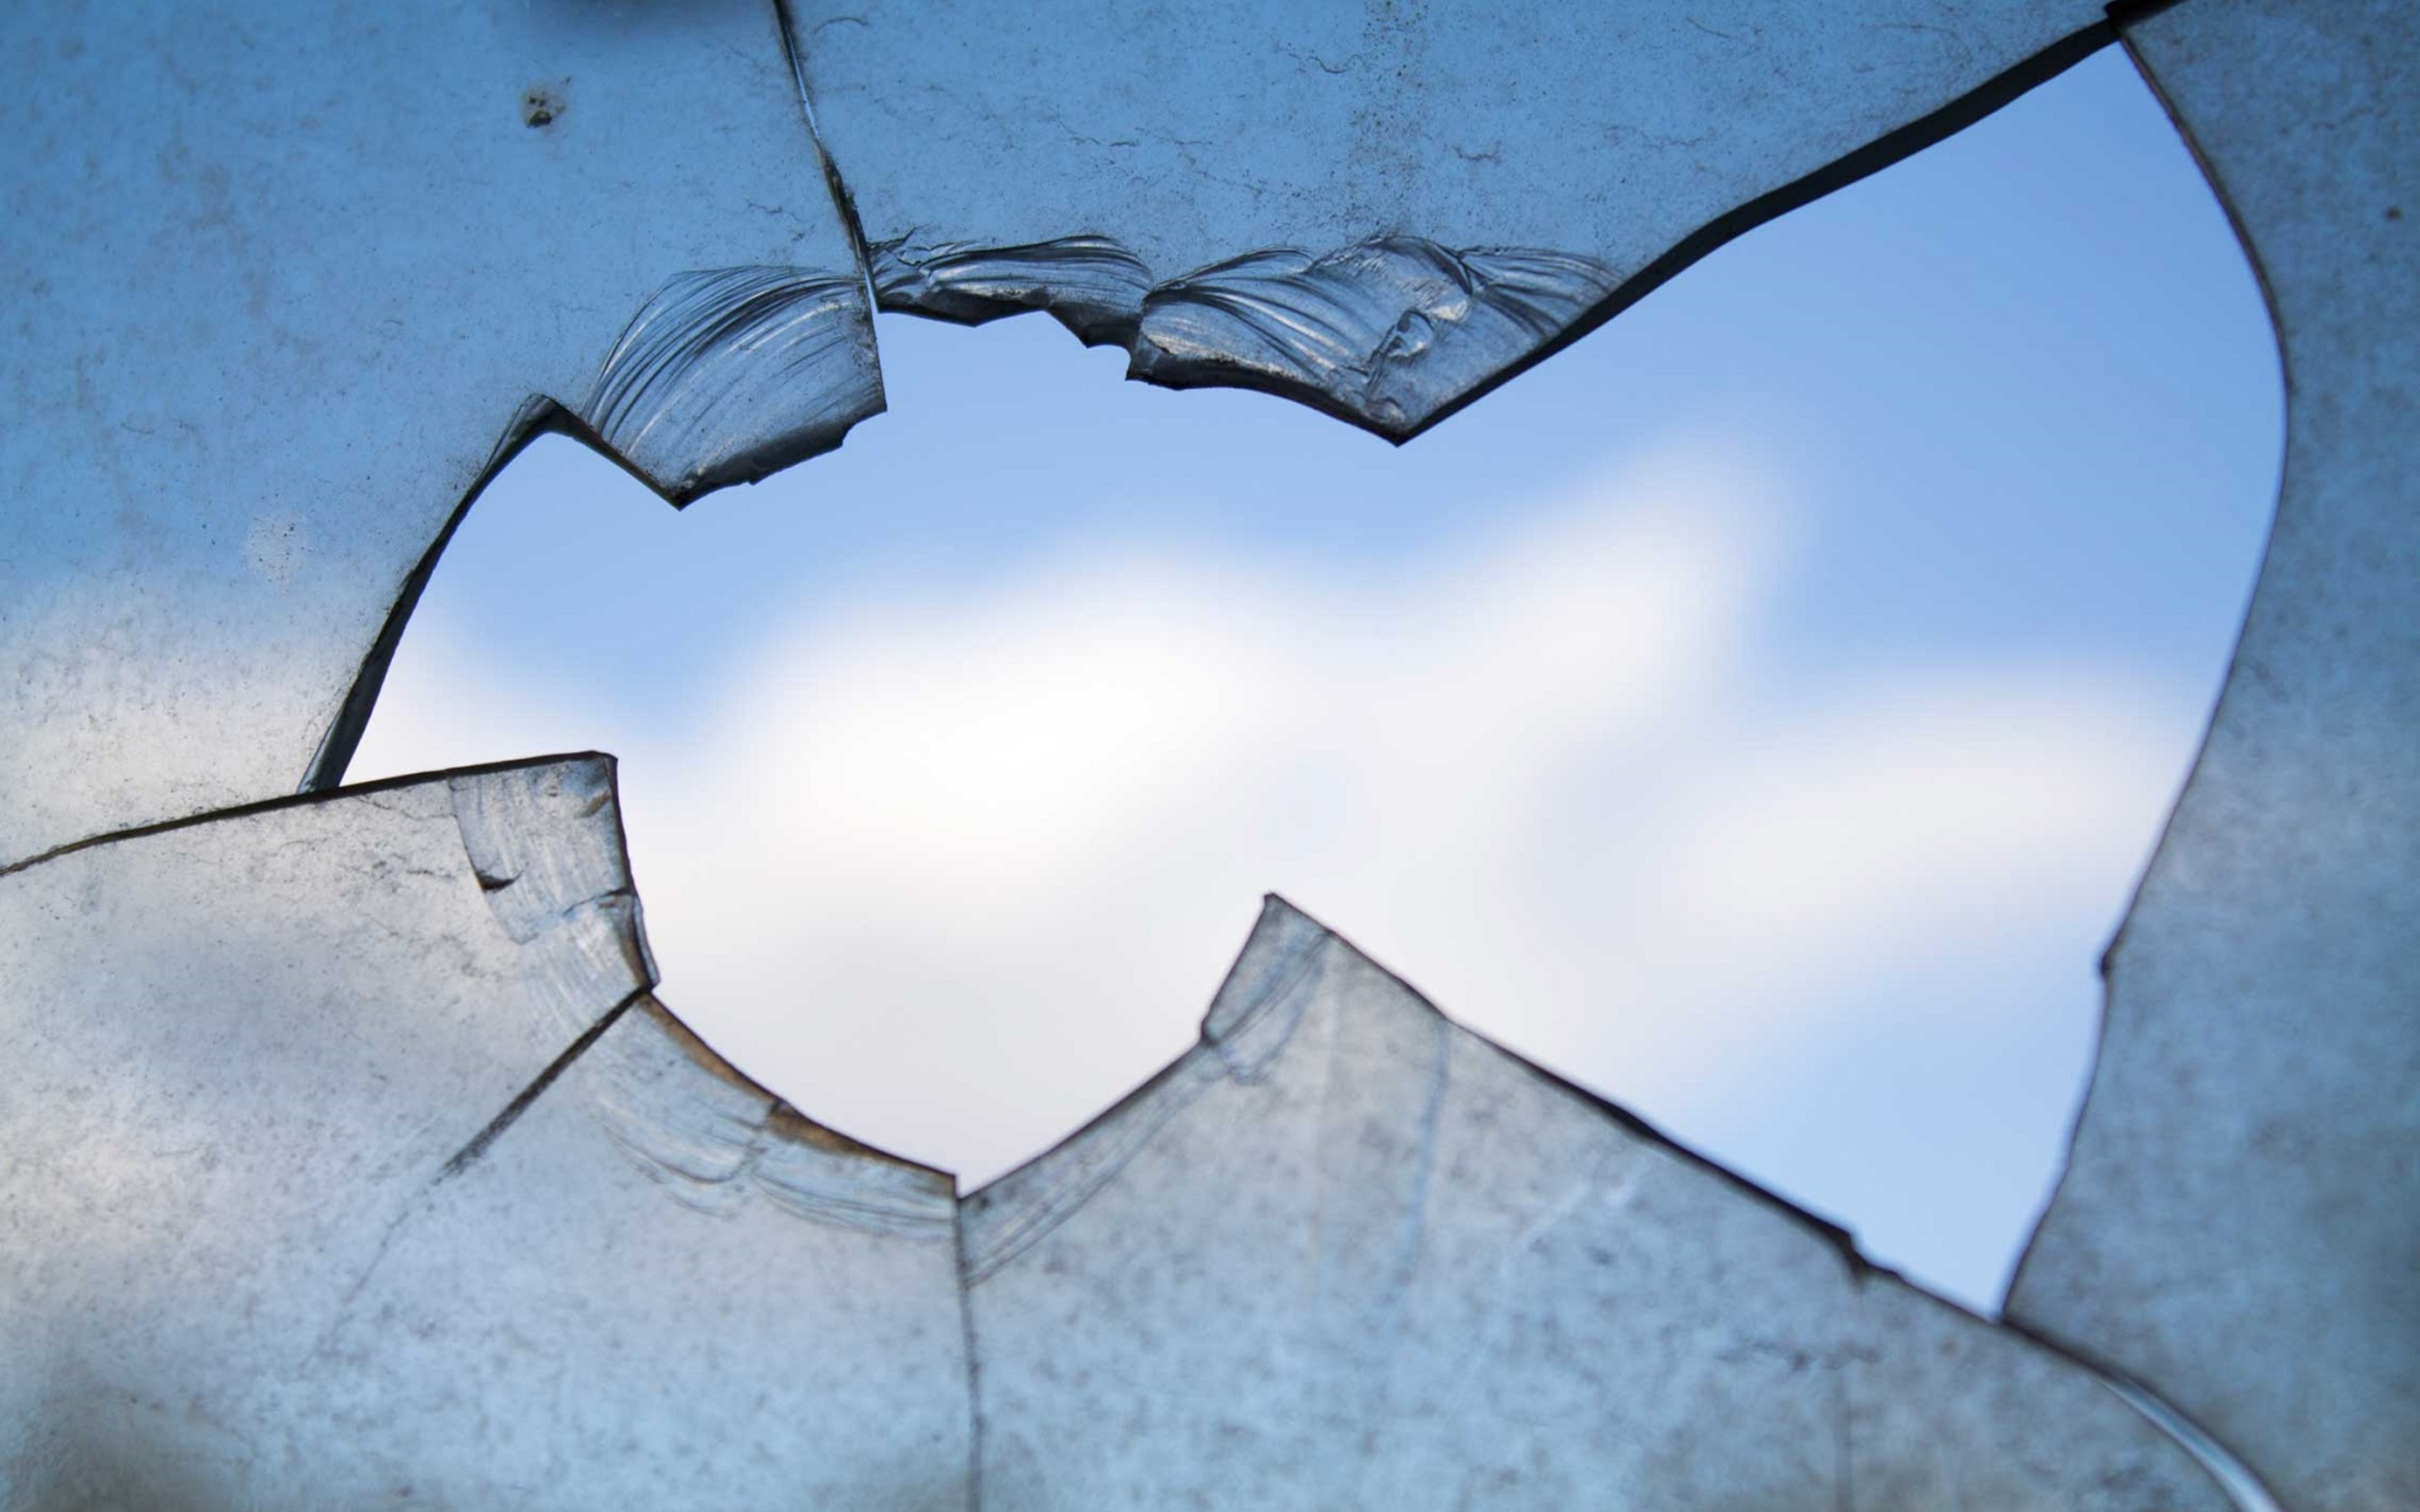 Объект разбитый. Разбитое окно. Трещина на стекле. Разбитые окна. Разбитое стекло в окне.